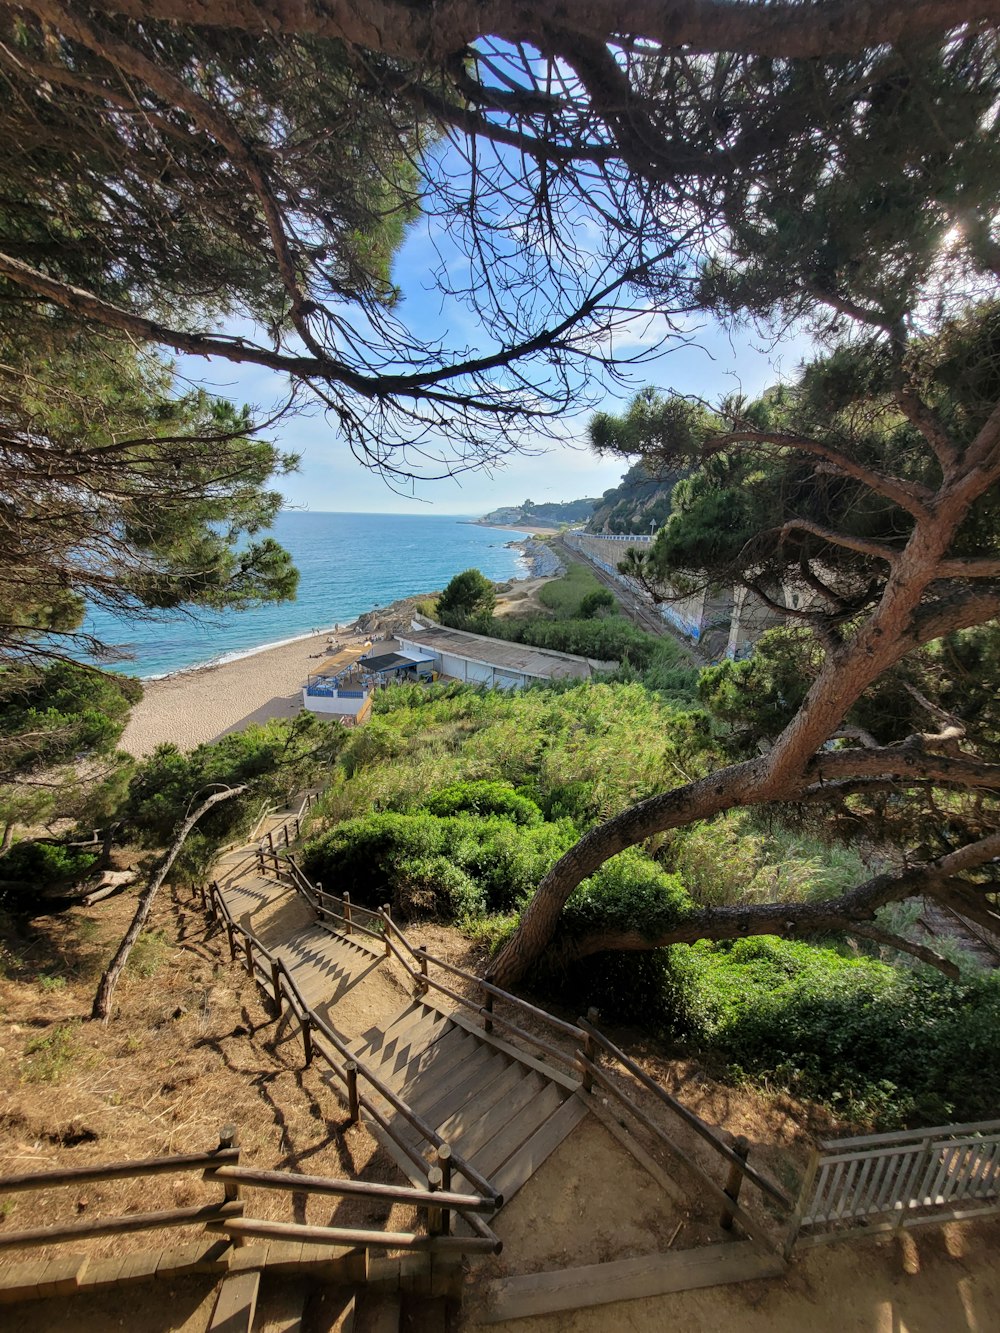 Una vista de una playa y el océano desde un árbol